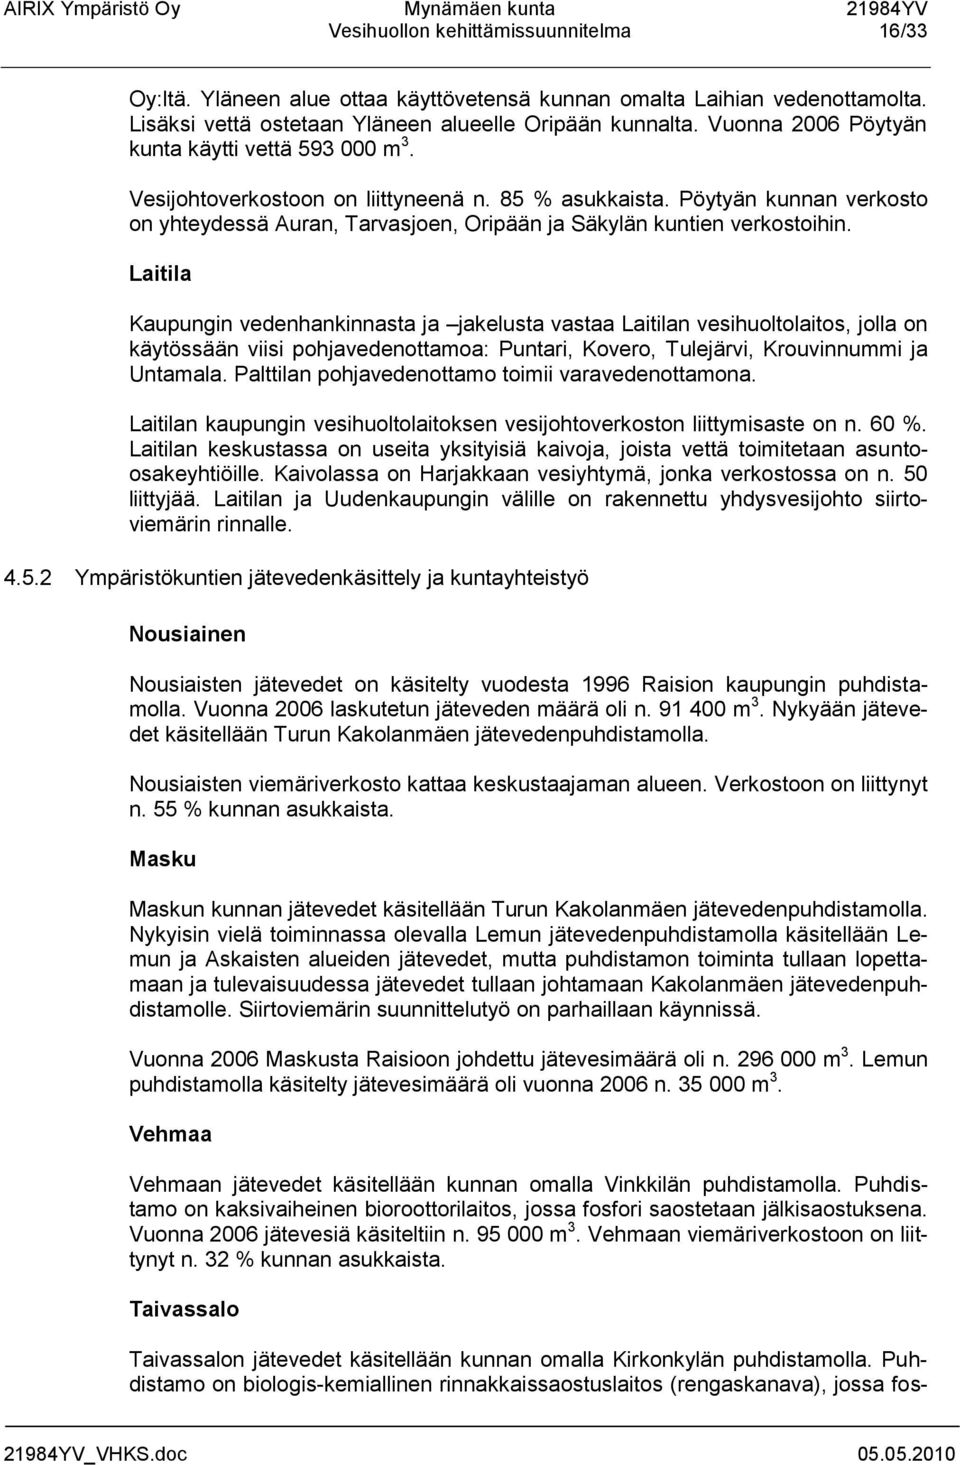 Pöytyän kunnan verkosto on yhteydessä Auran, Tarvasjoen, Oripään ja Säkylän kuntien verkostoihin.